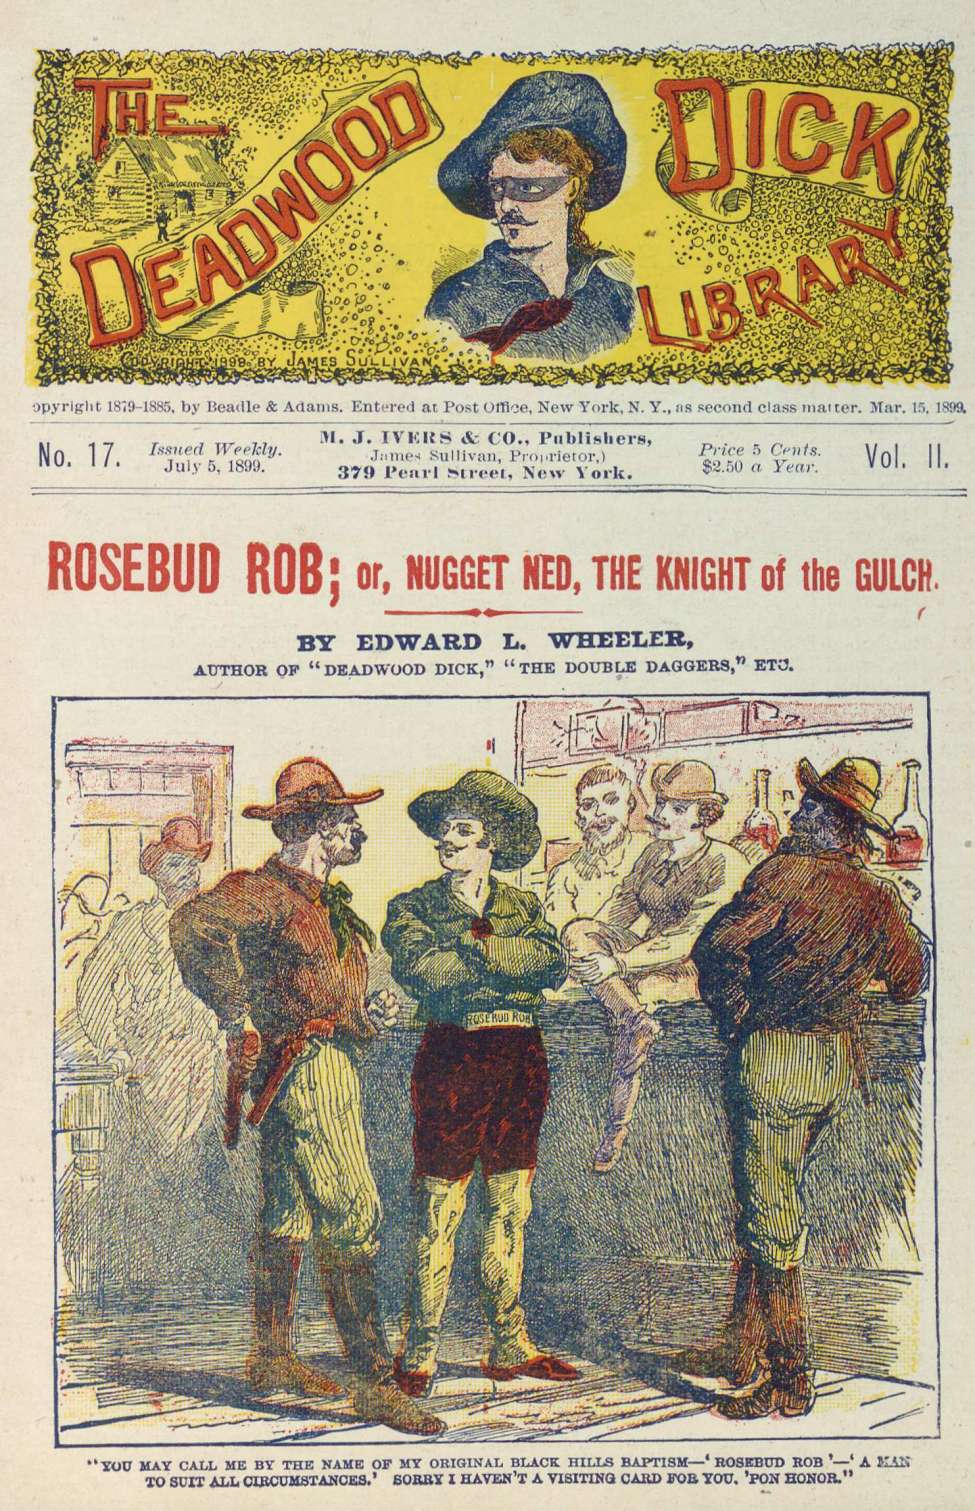 Book Cover For Deadwood Dick Library v2 17 - Rosebud Rob